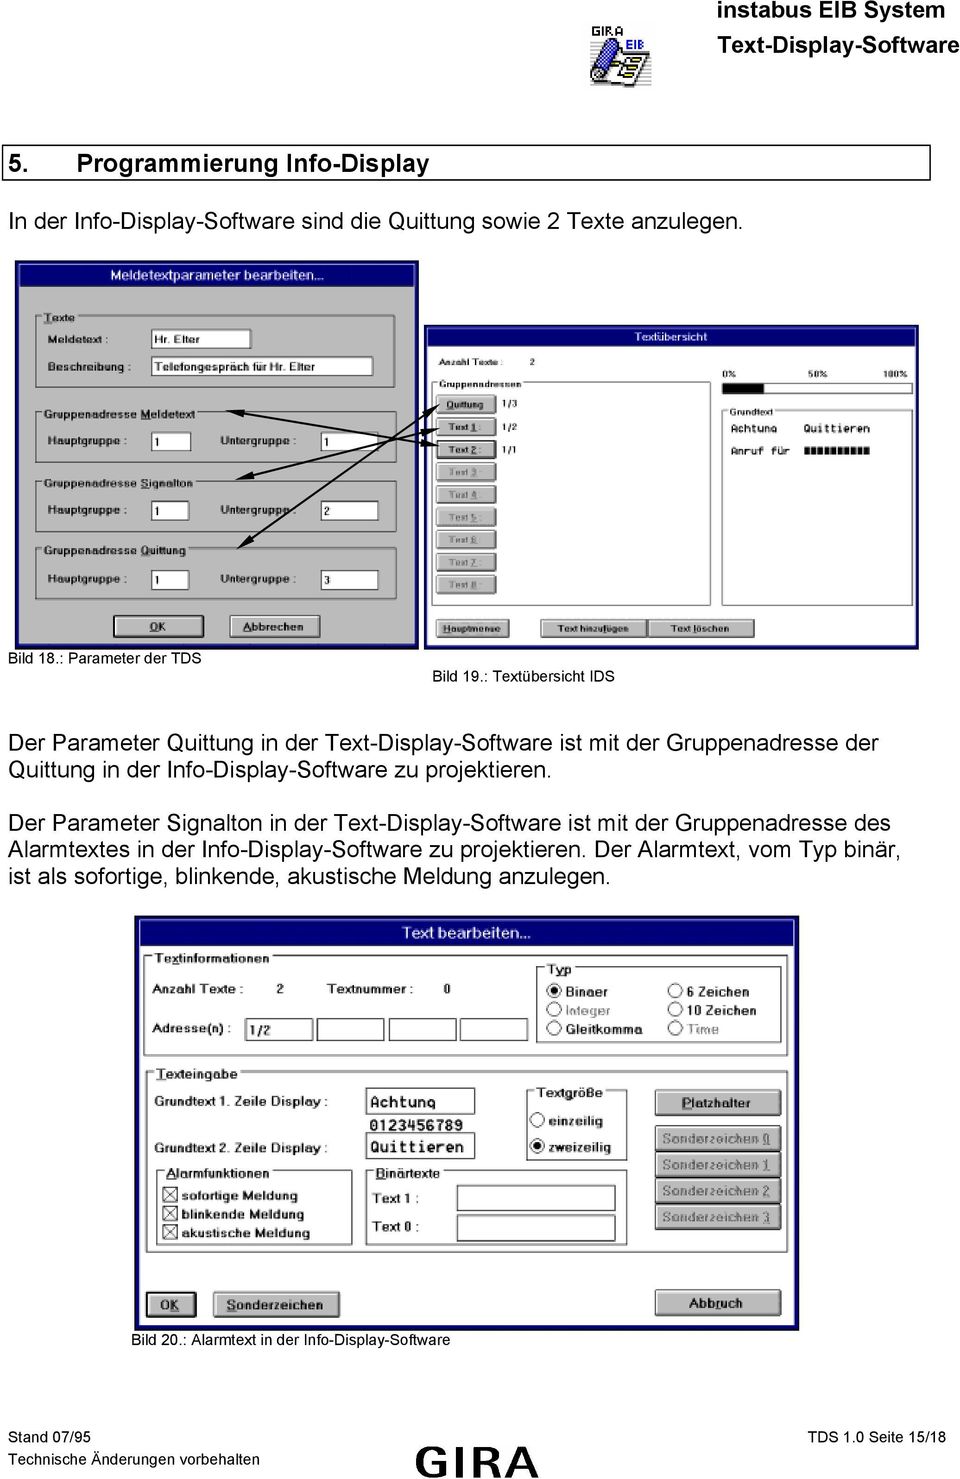 Der Parameter Signalton in der ist mit der Gruppenadresse des Alarmtextes in der Info-Display-Software zu projektieren.